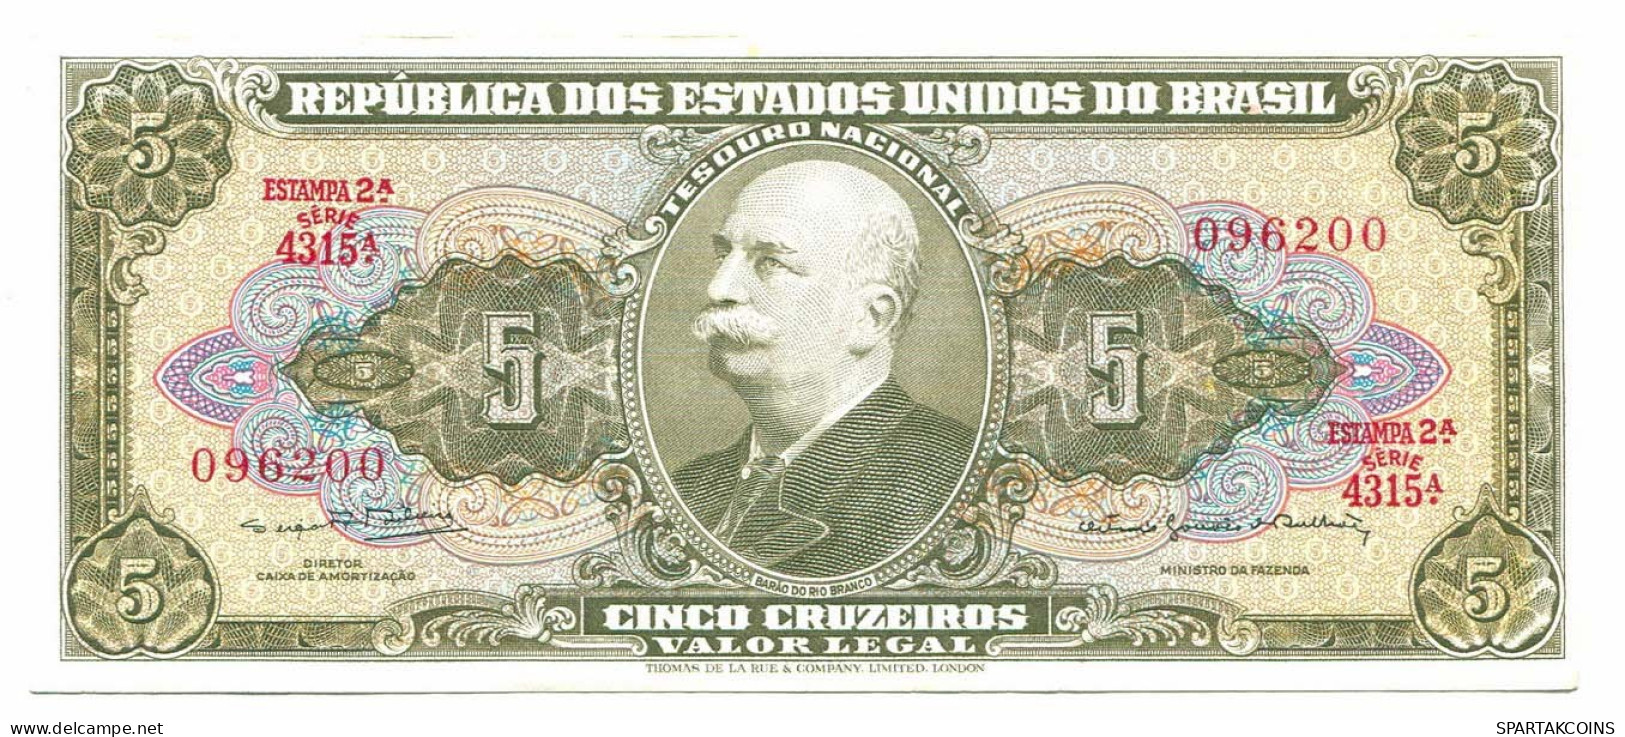 BRASIL 5 CRUZEIROS 1962 UNC Paper Money Banknote #P10830.4 - Lokale Ausgaben